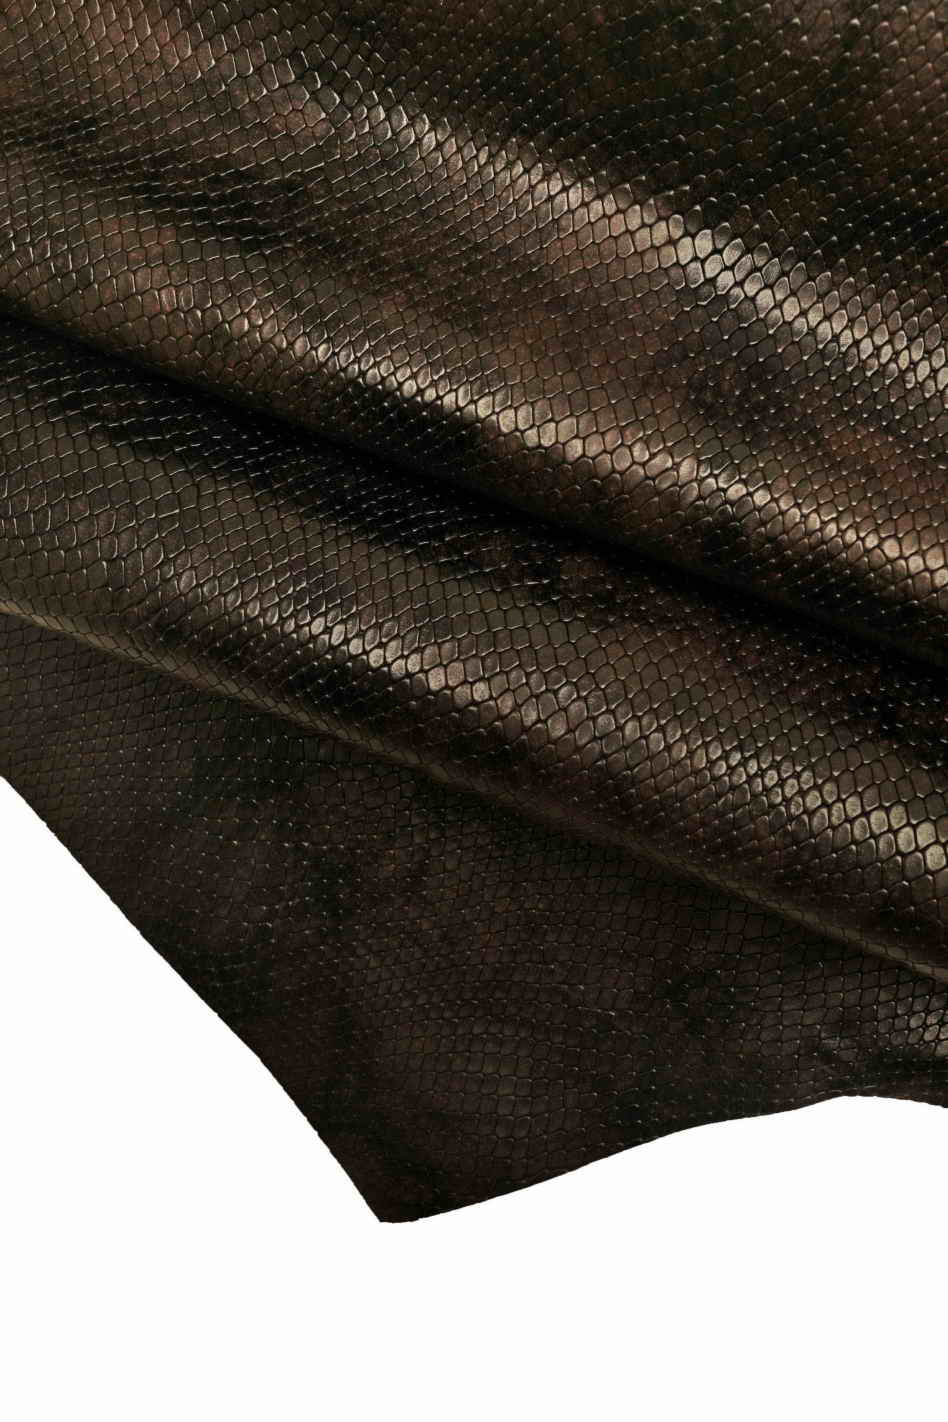 EPI Printed Calfskin Leather Hides